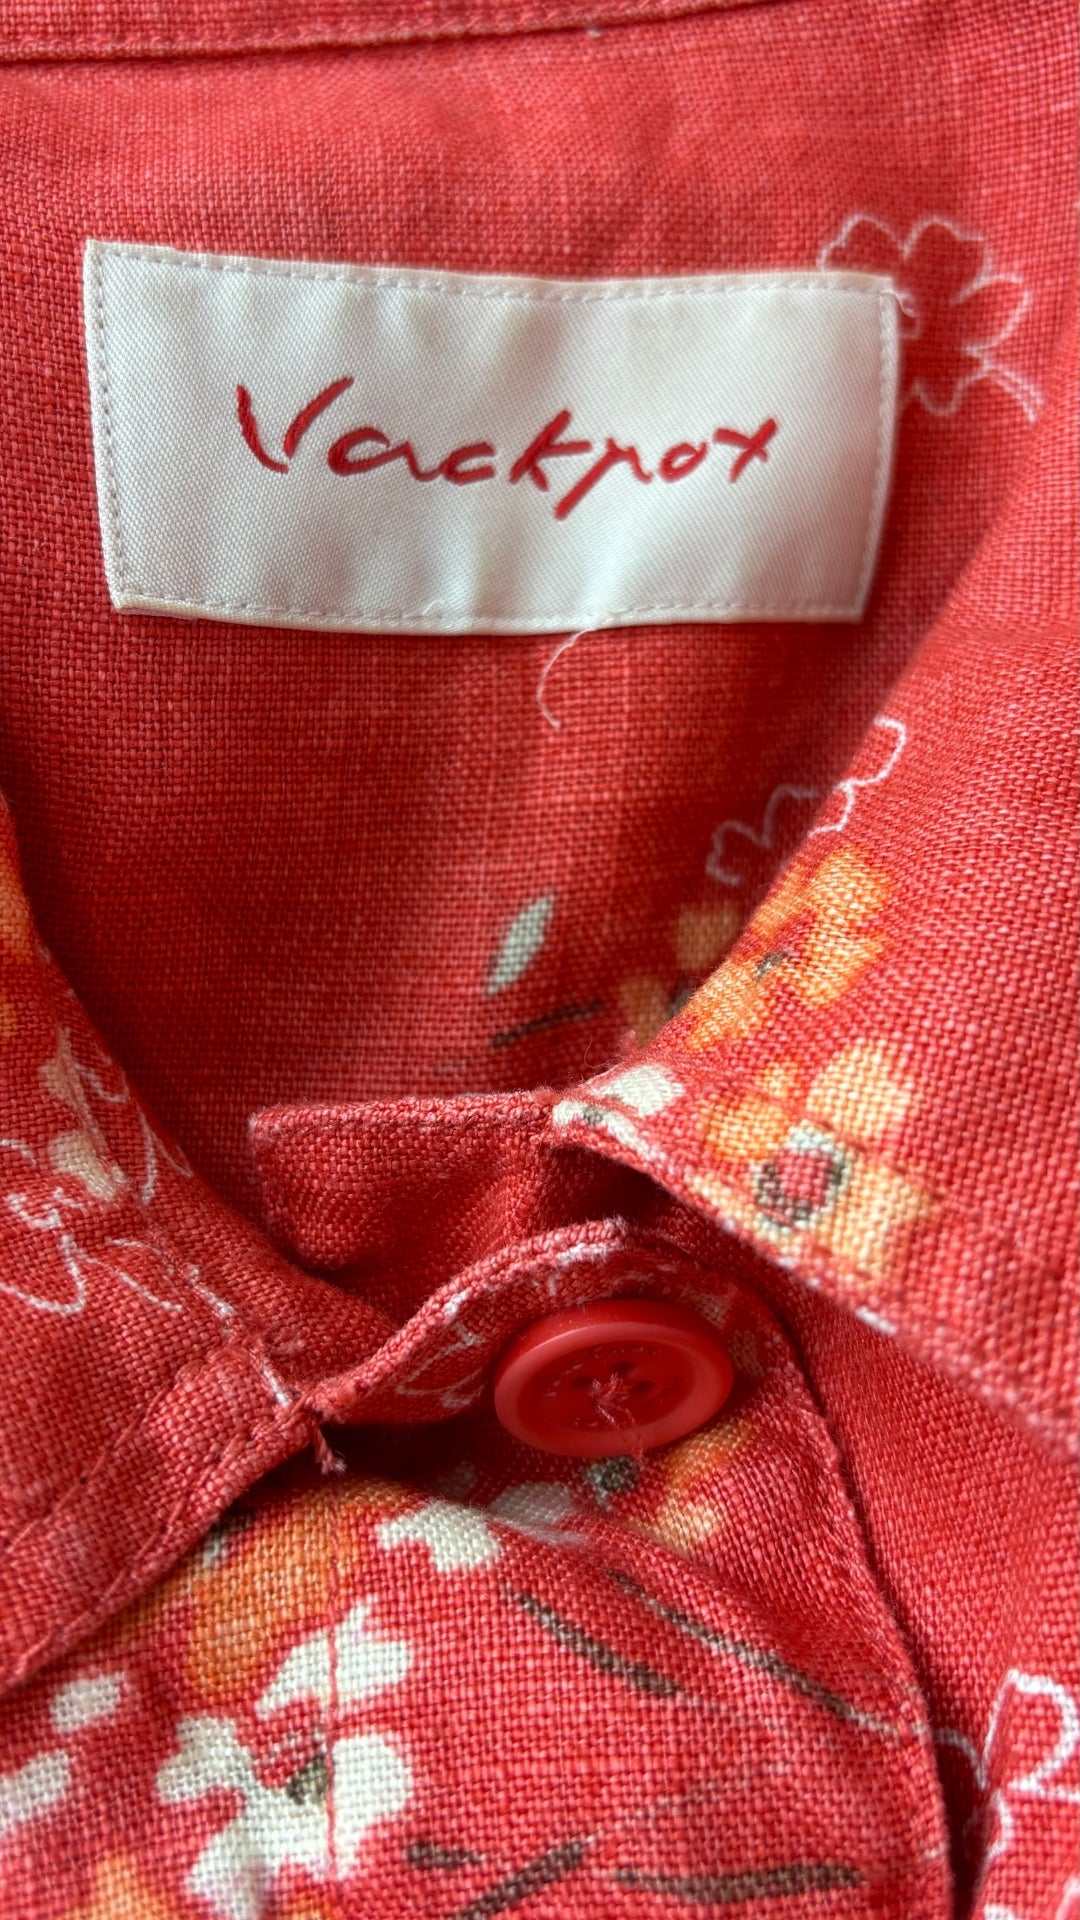 Veste florale corail en lin Jackpot, taille estimée medium. Vue de l'étiquette de marque.